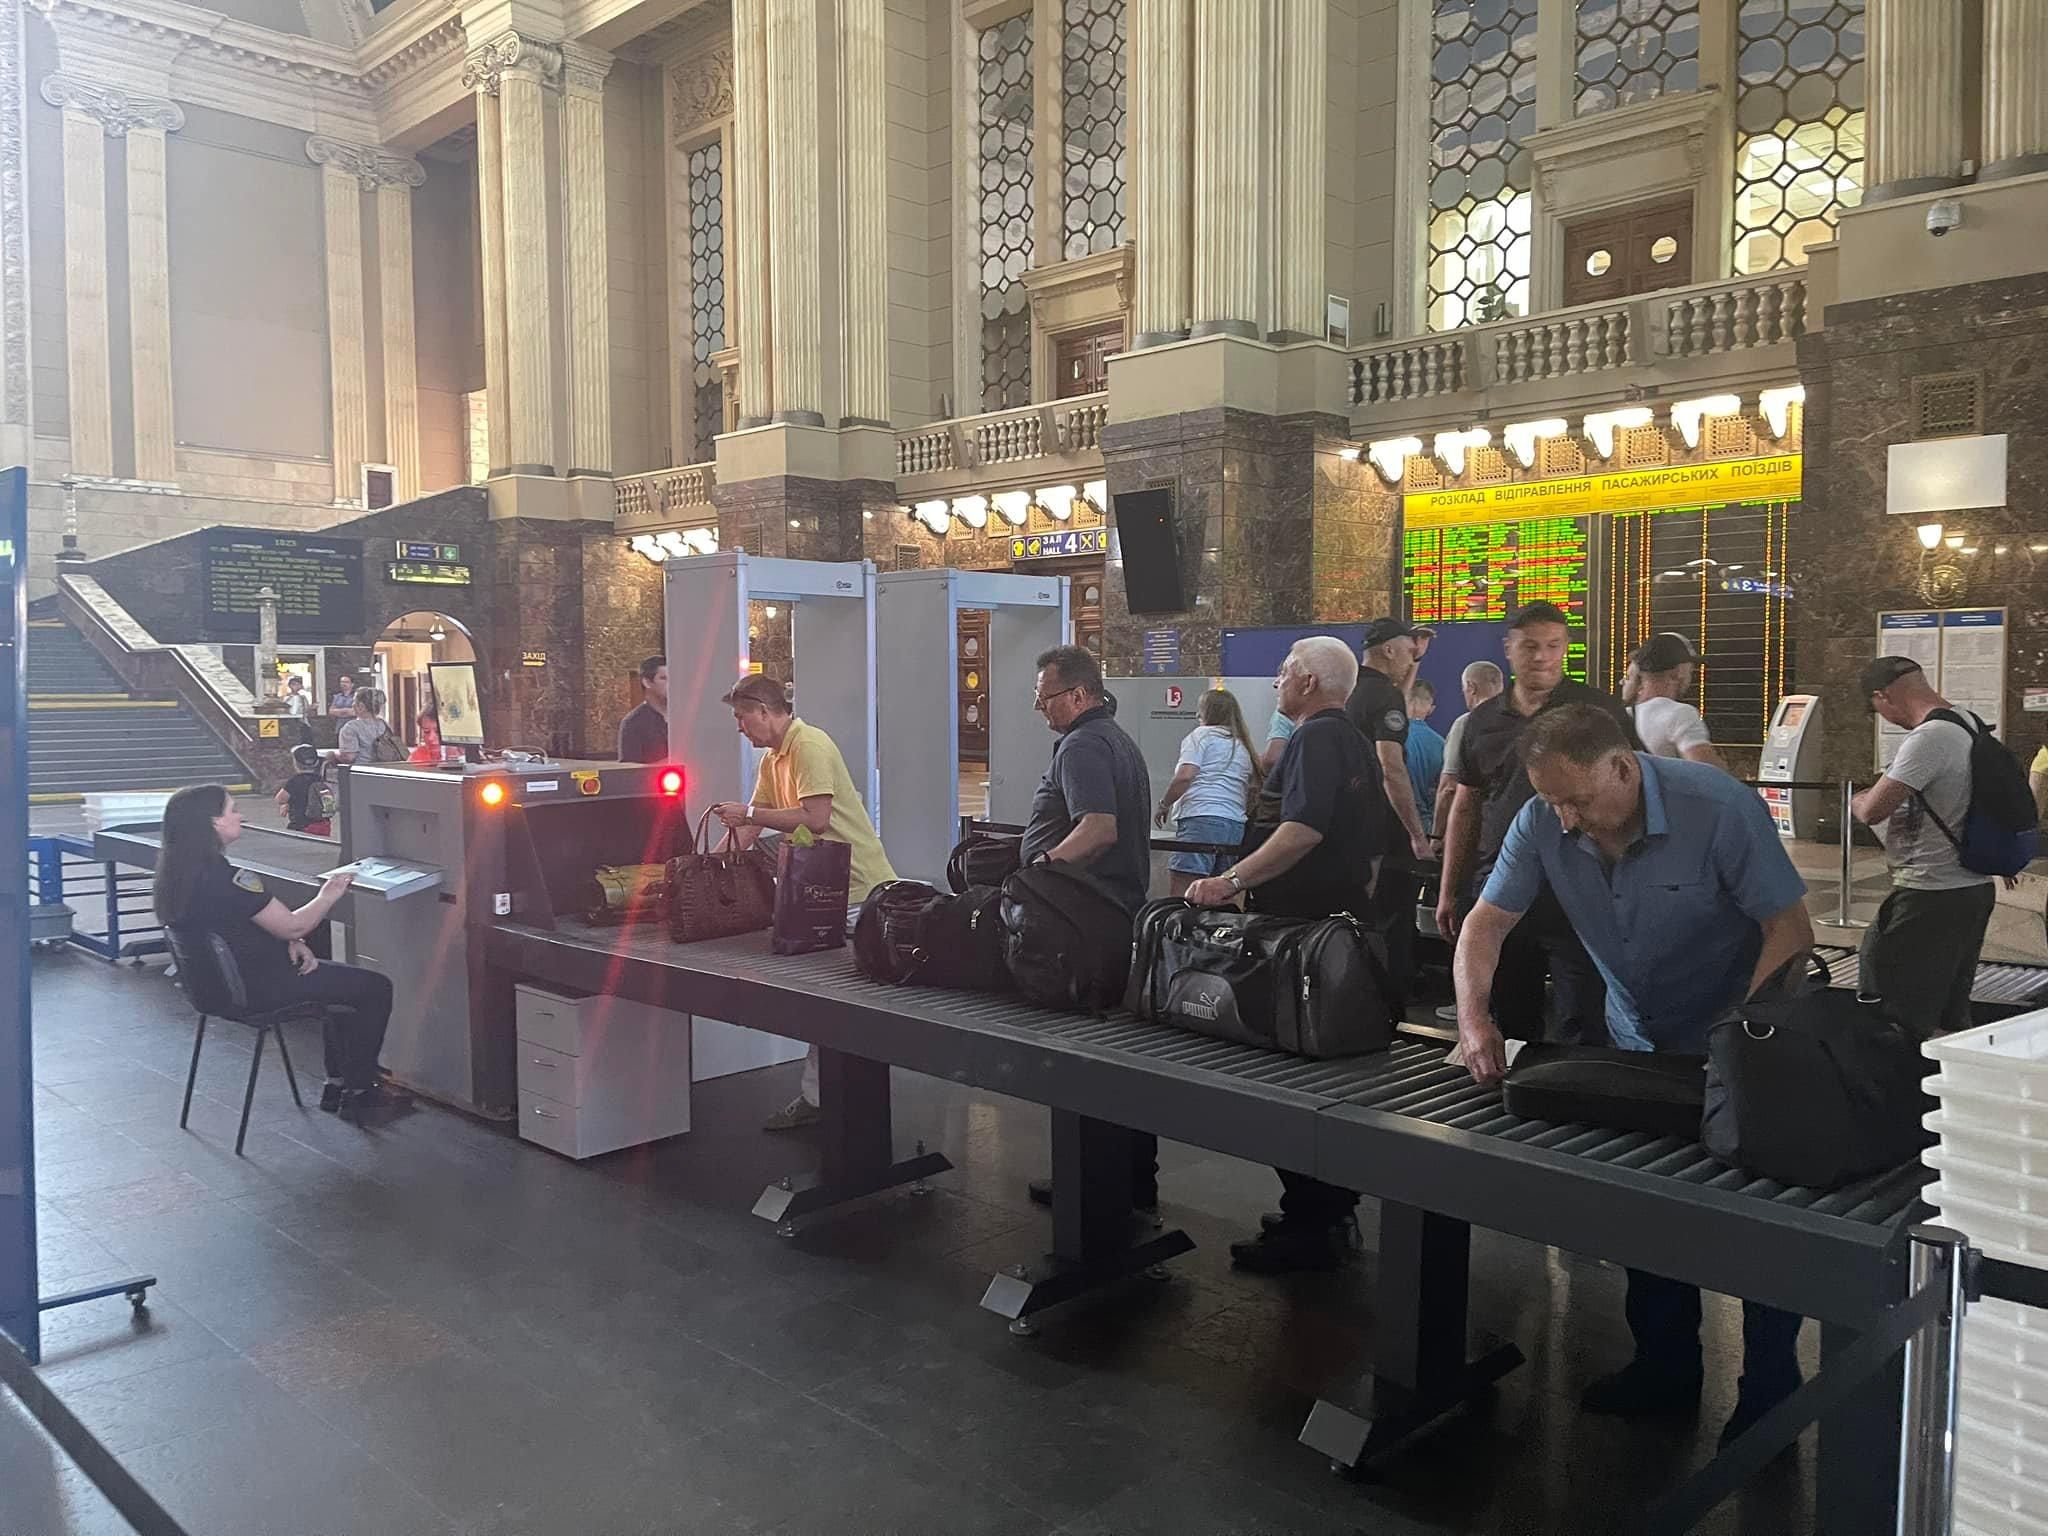 На киевском вокзале будут проверять пассажиров и чемоданы через металлоискатели